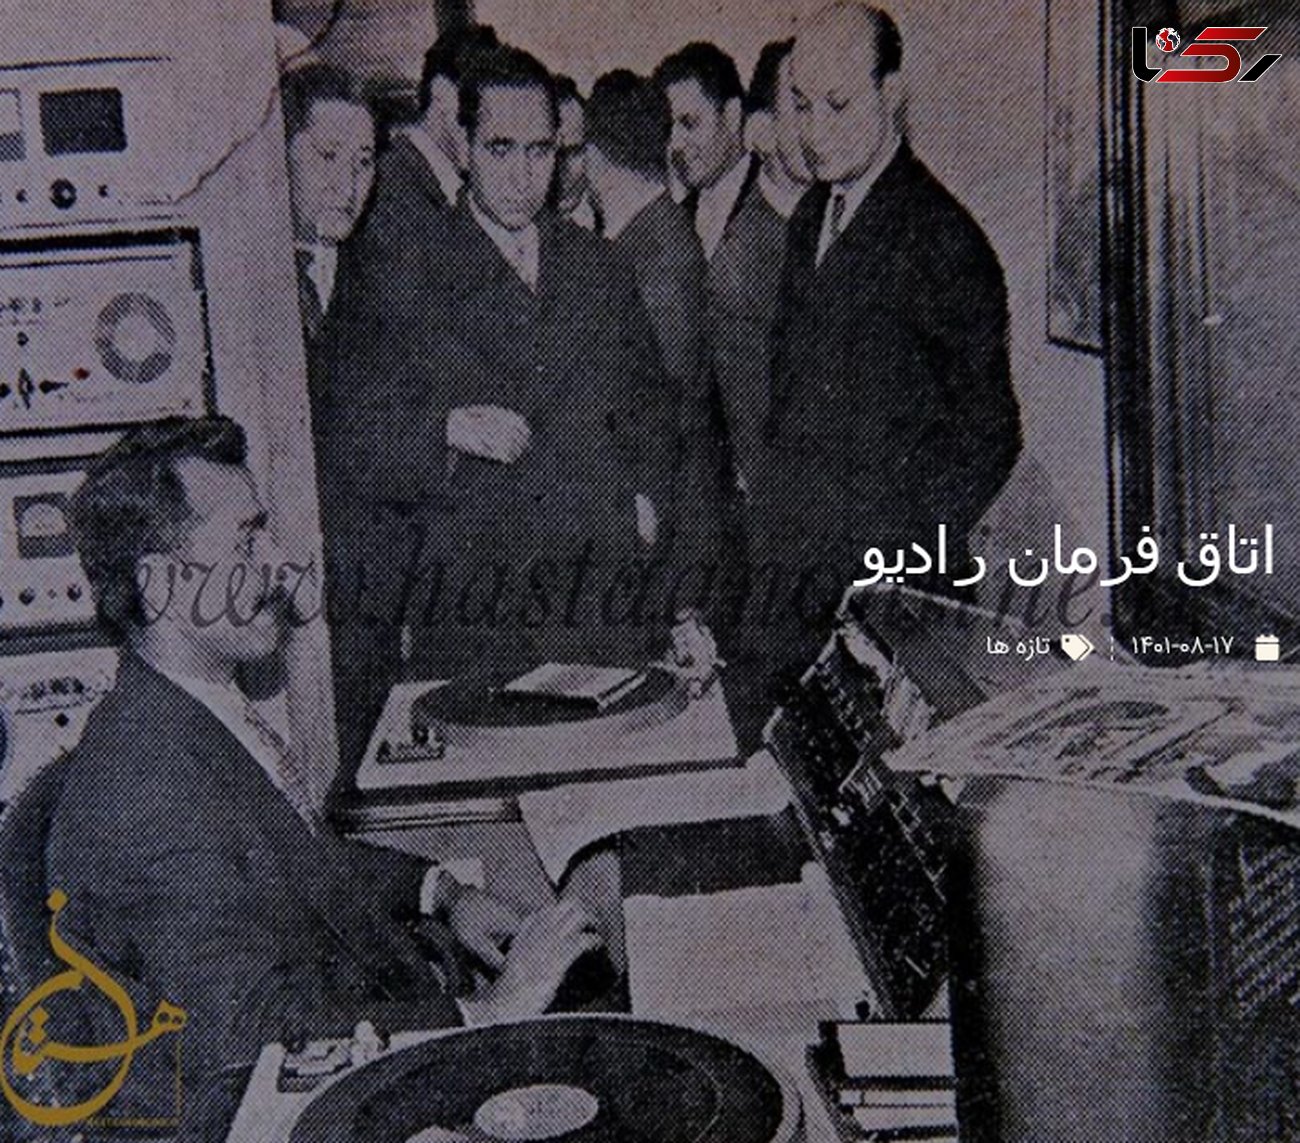 عکسی قدیمی از اتاق فرمان رادیو تهران در نخستین سال تاسیس